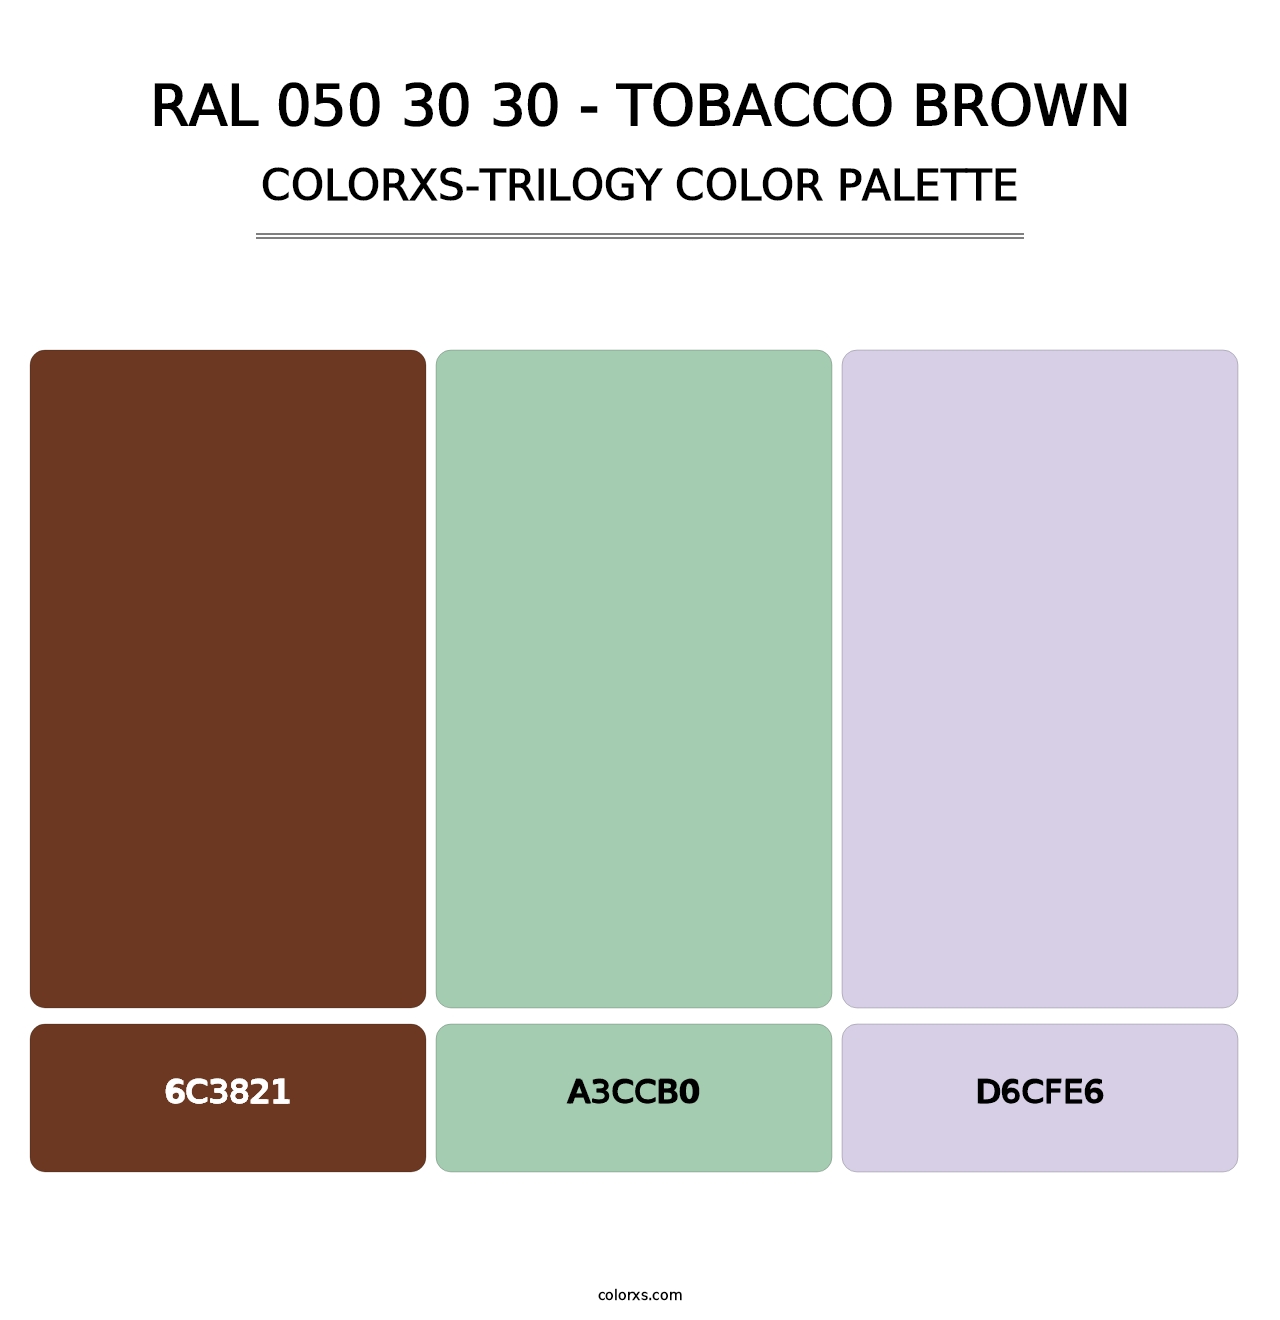 RAL 050 30 30 - Tobacco Brown - Colorxs Trilogy Palette